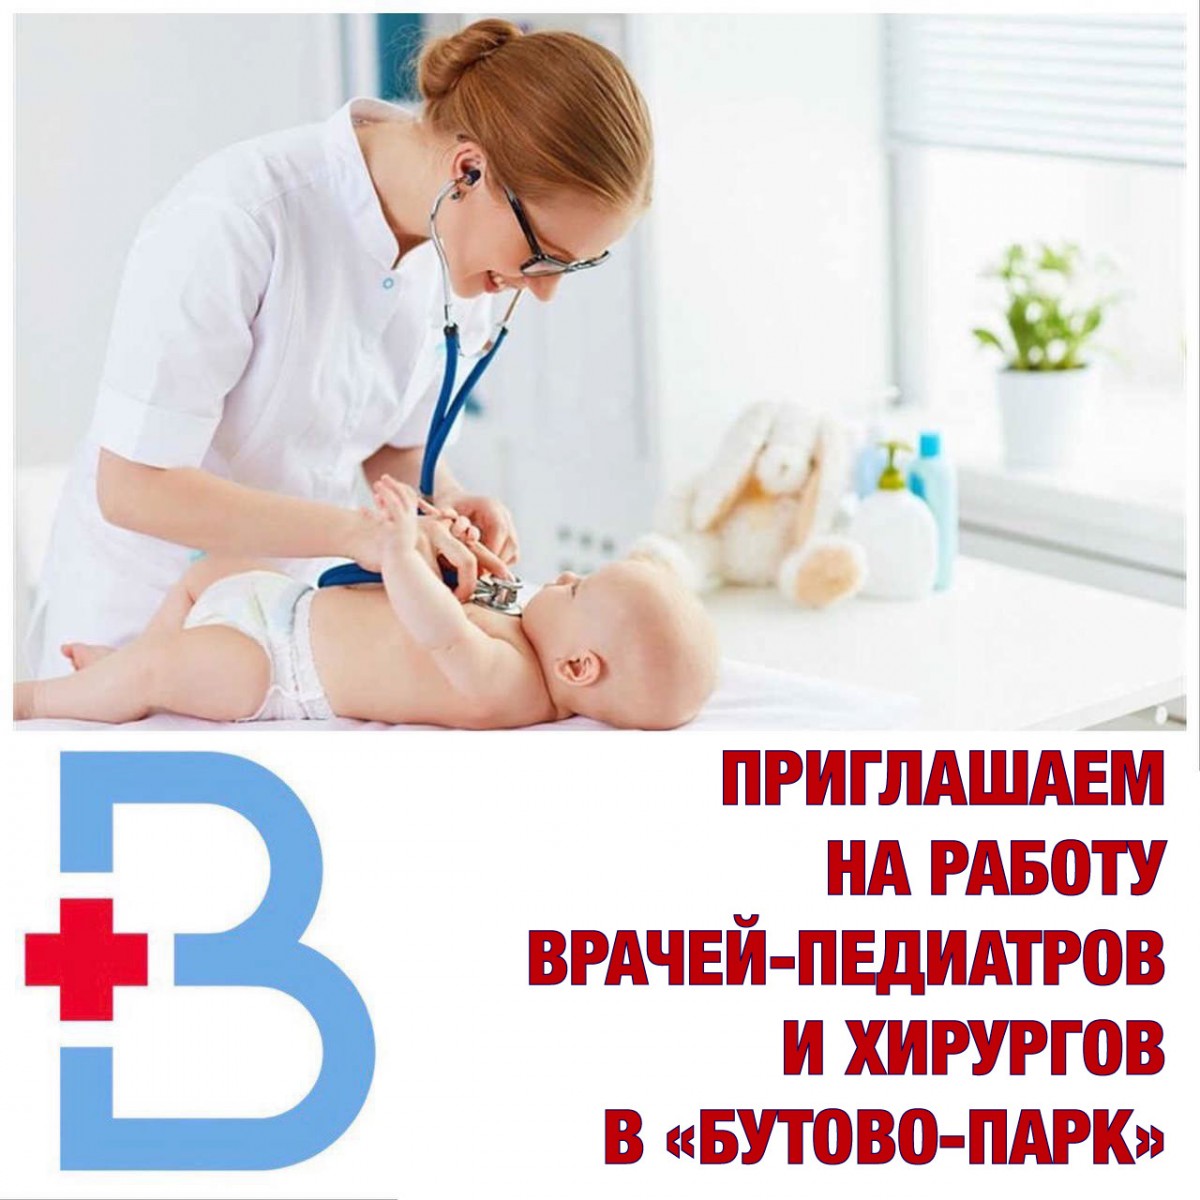 Вакансии во врачебной амбулатории «Бутово-Парк»